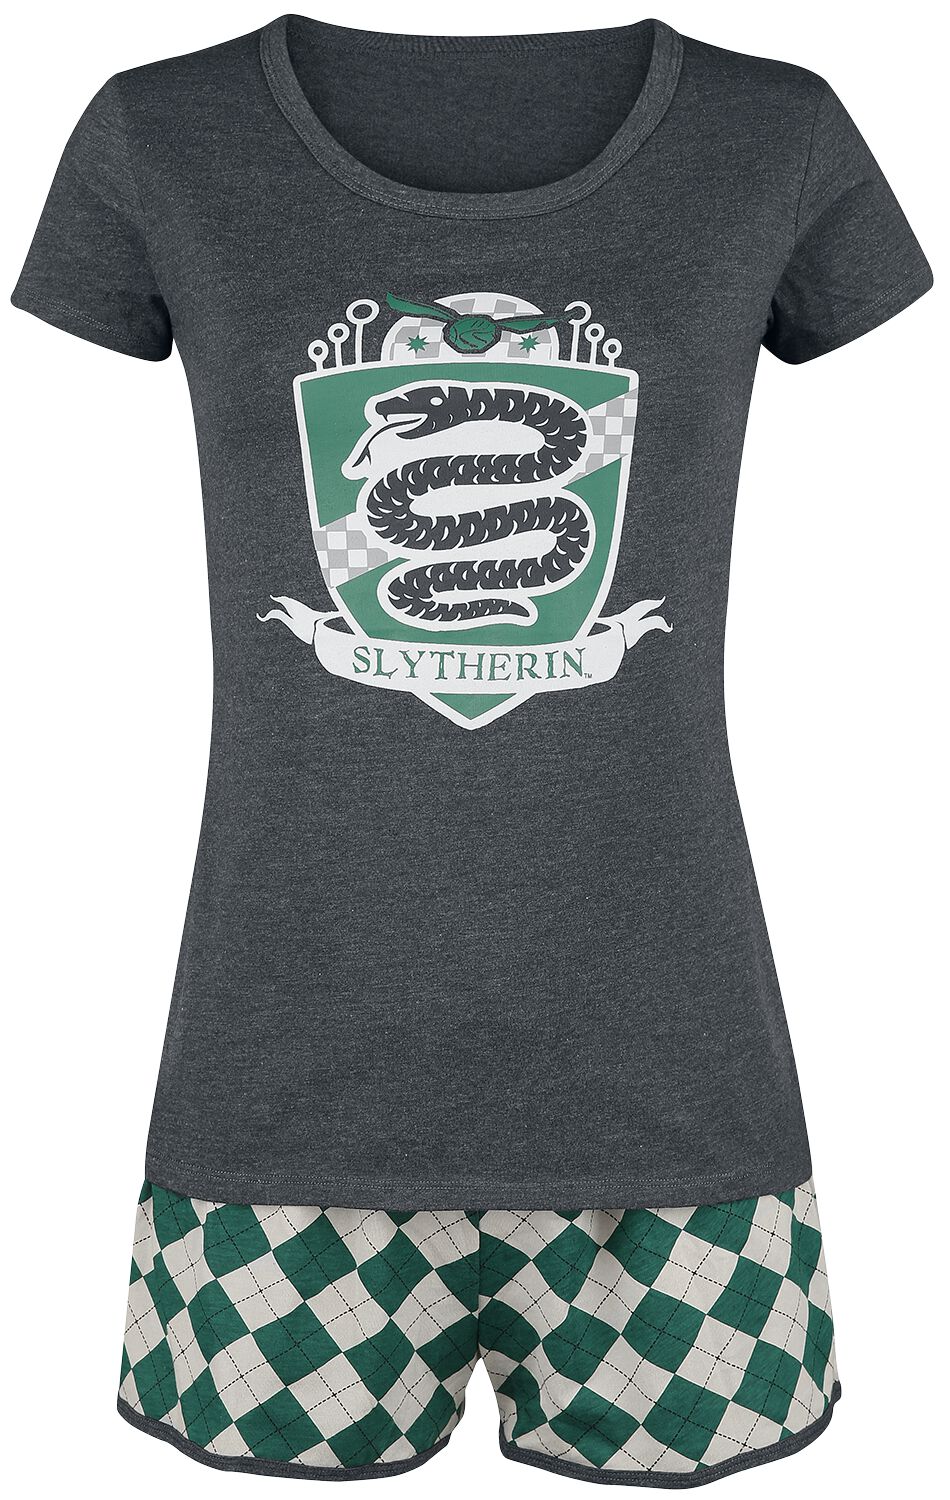 Harry Potter Schlafanzug - Slytherin Quidditch - XS bis 3XL - für Damen - Größe 3XL - grün/grau  - EMP exklusives Merchandise!